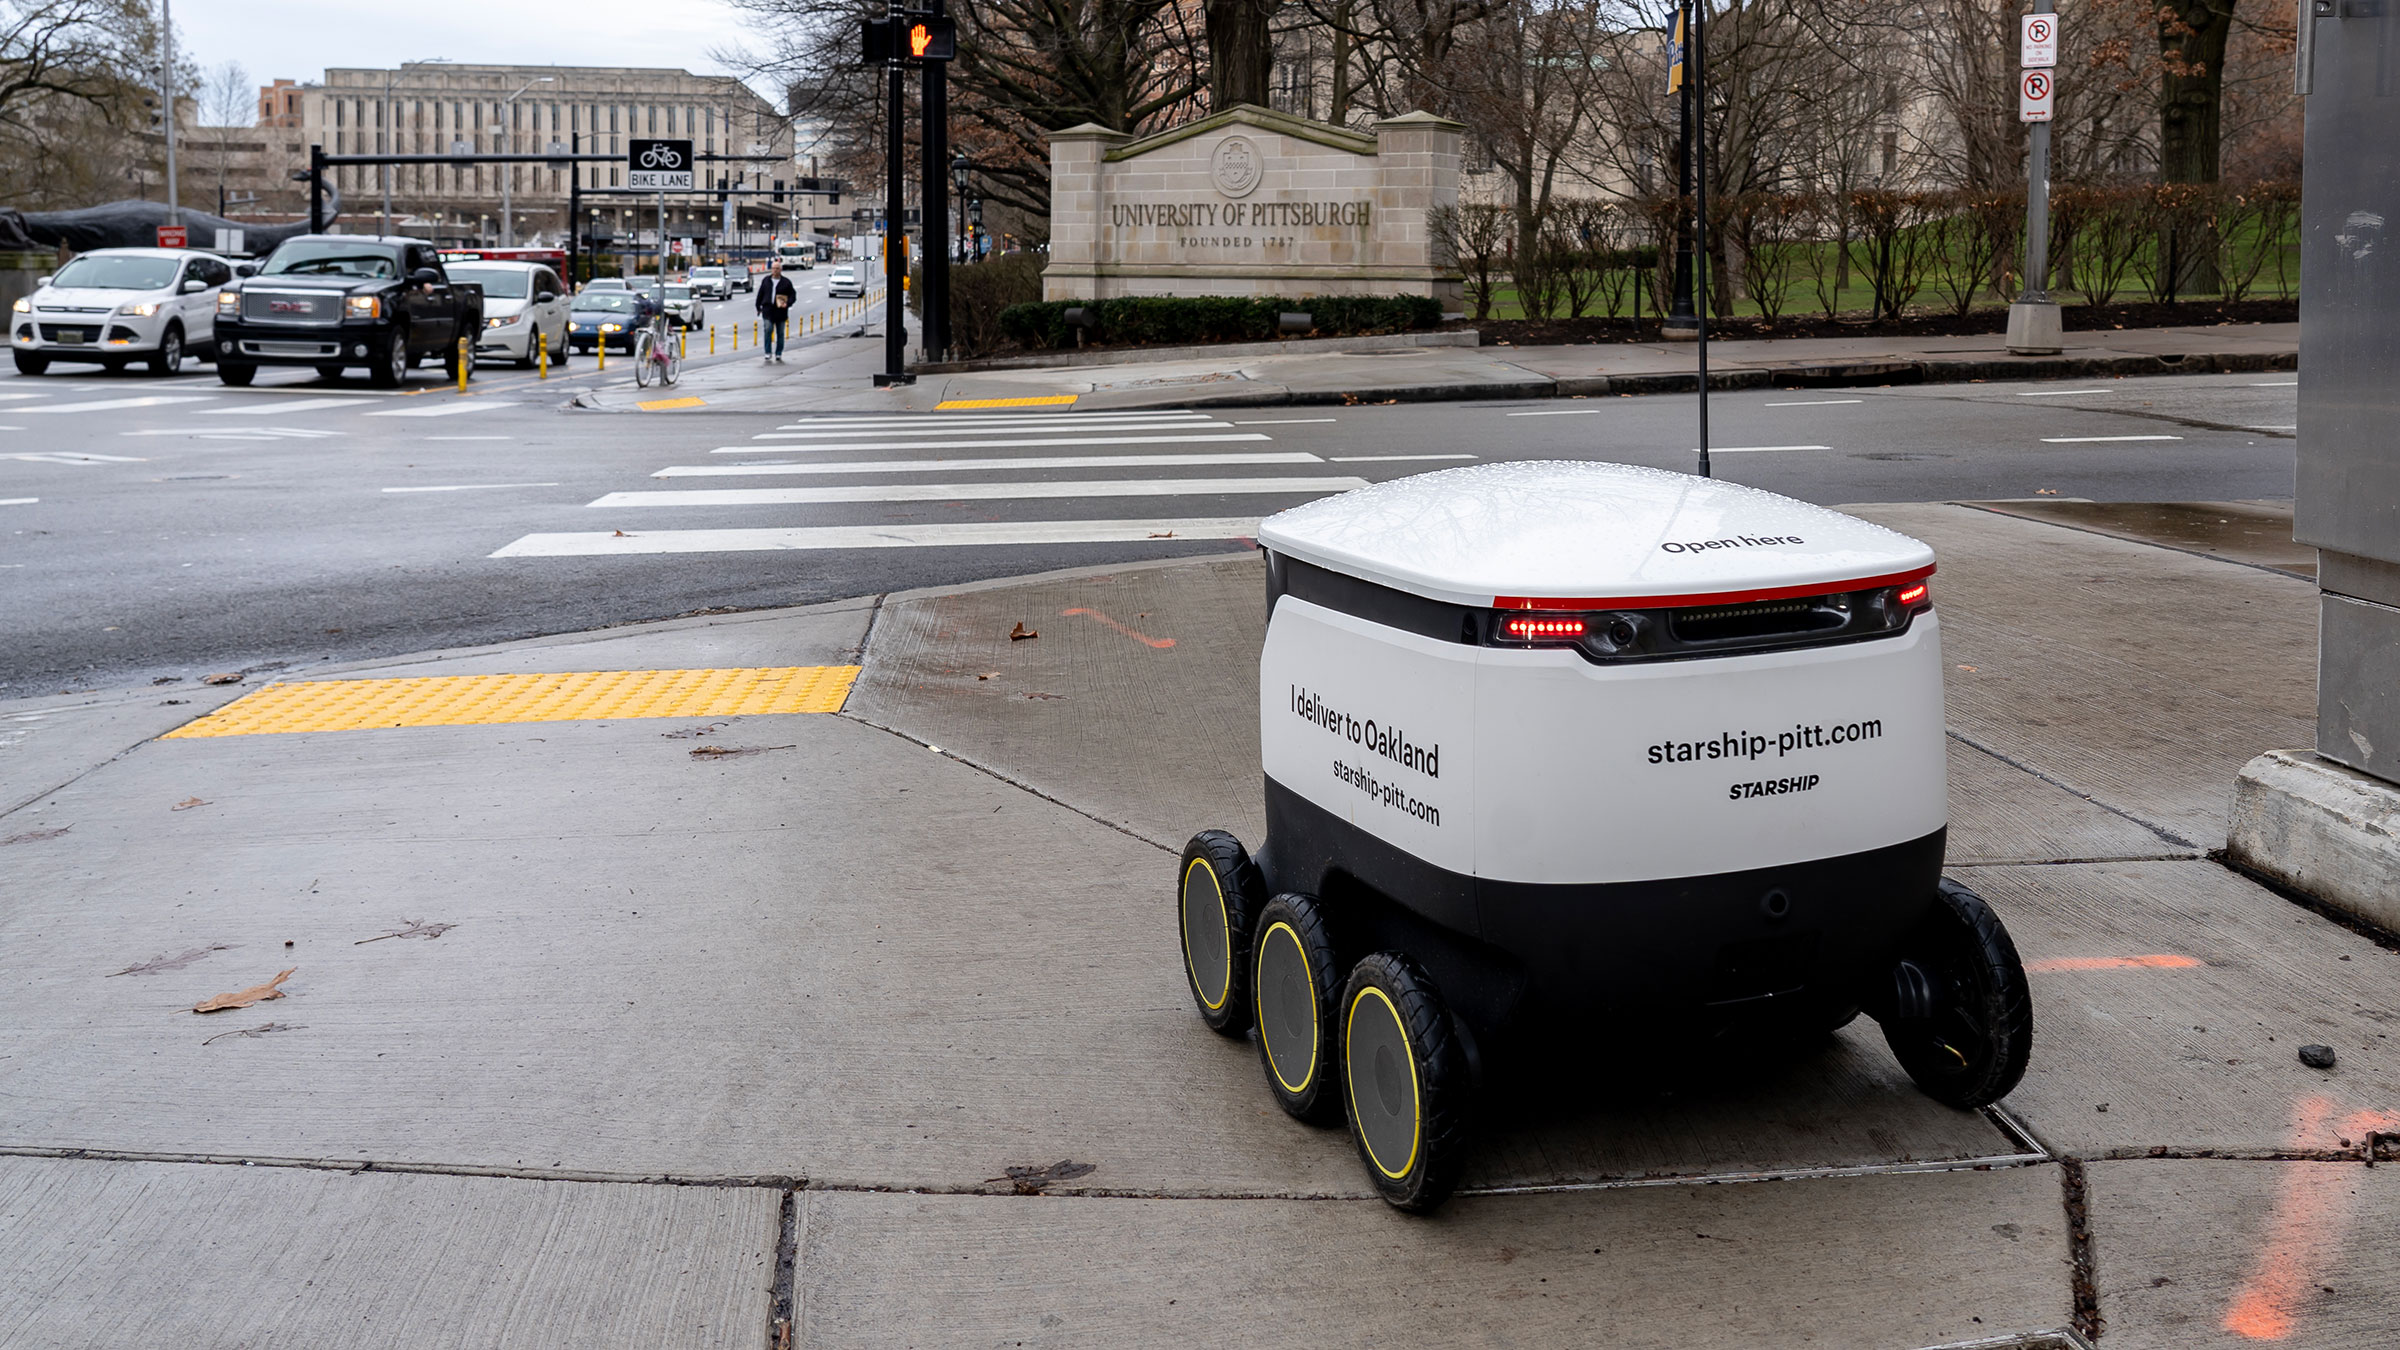 Este robot te aspira a ti si te descuidas: tiene 7000 Pa de